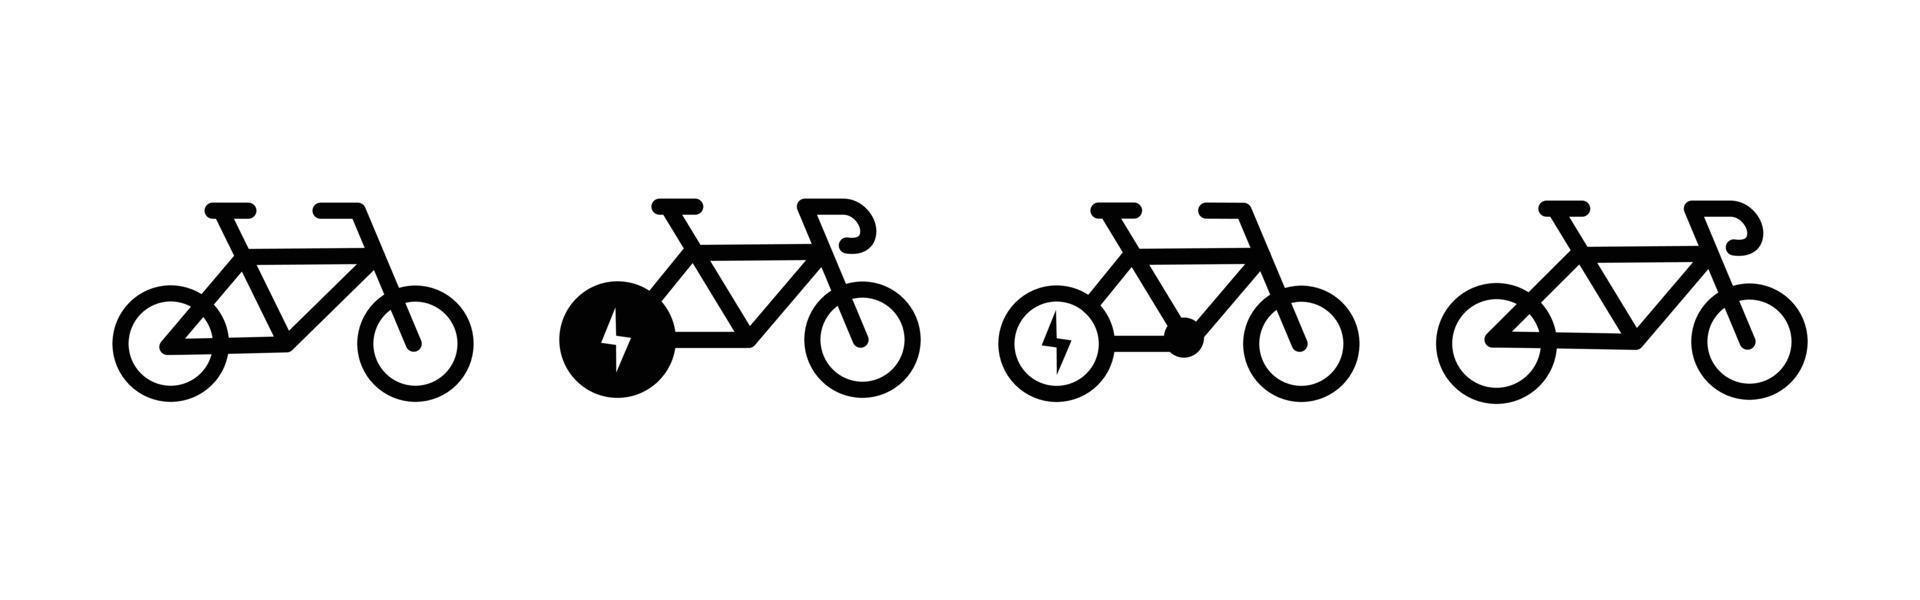 ensemble d'icônes de vélo électrique pour la conception de symboles écologiques vecteur